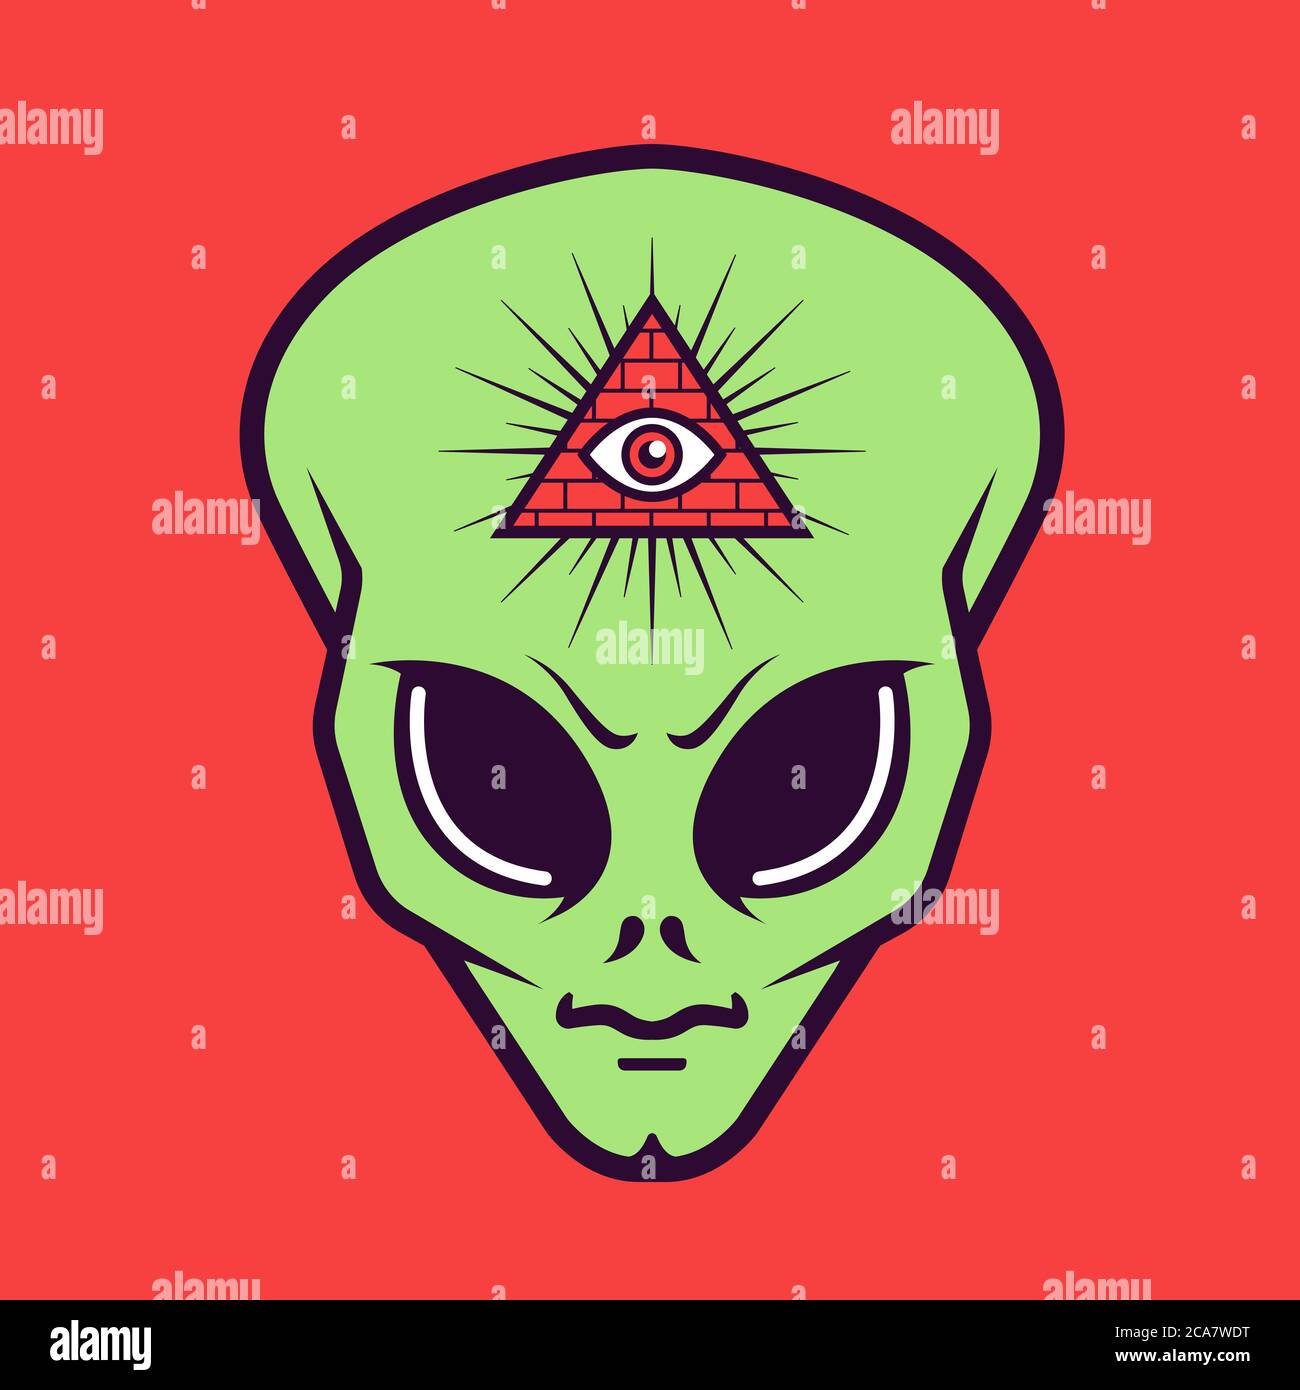 Alien Kopf mit einem Freimaurer Dreieck Zeichen mit einem Auge. Geheime Gesellschaft. Flache Vektorgrafik. Stock Vektor